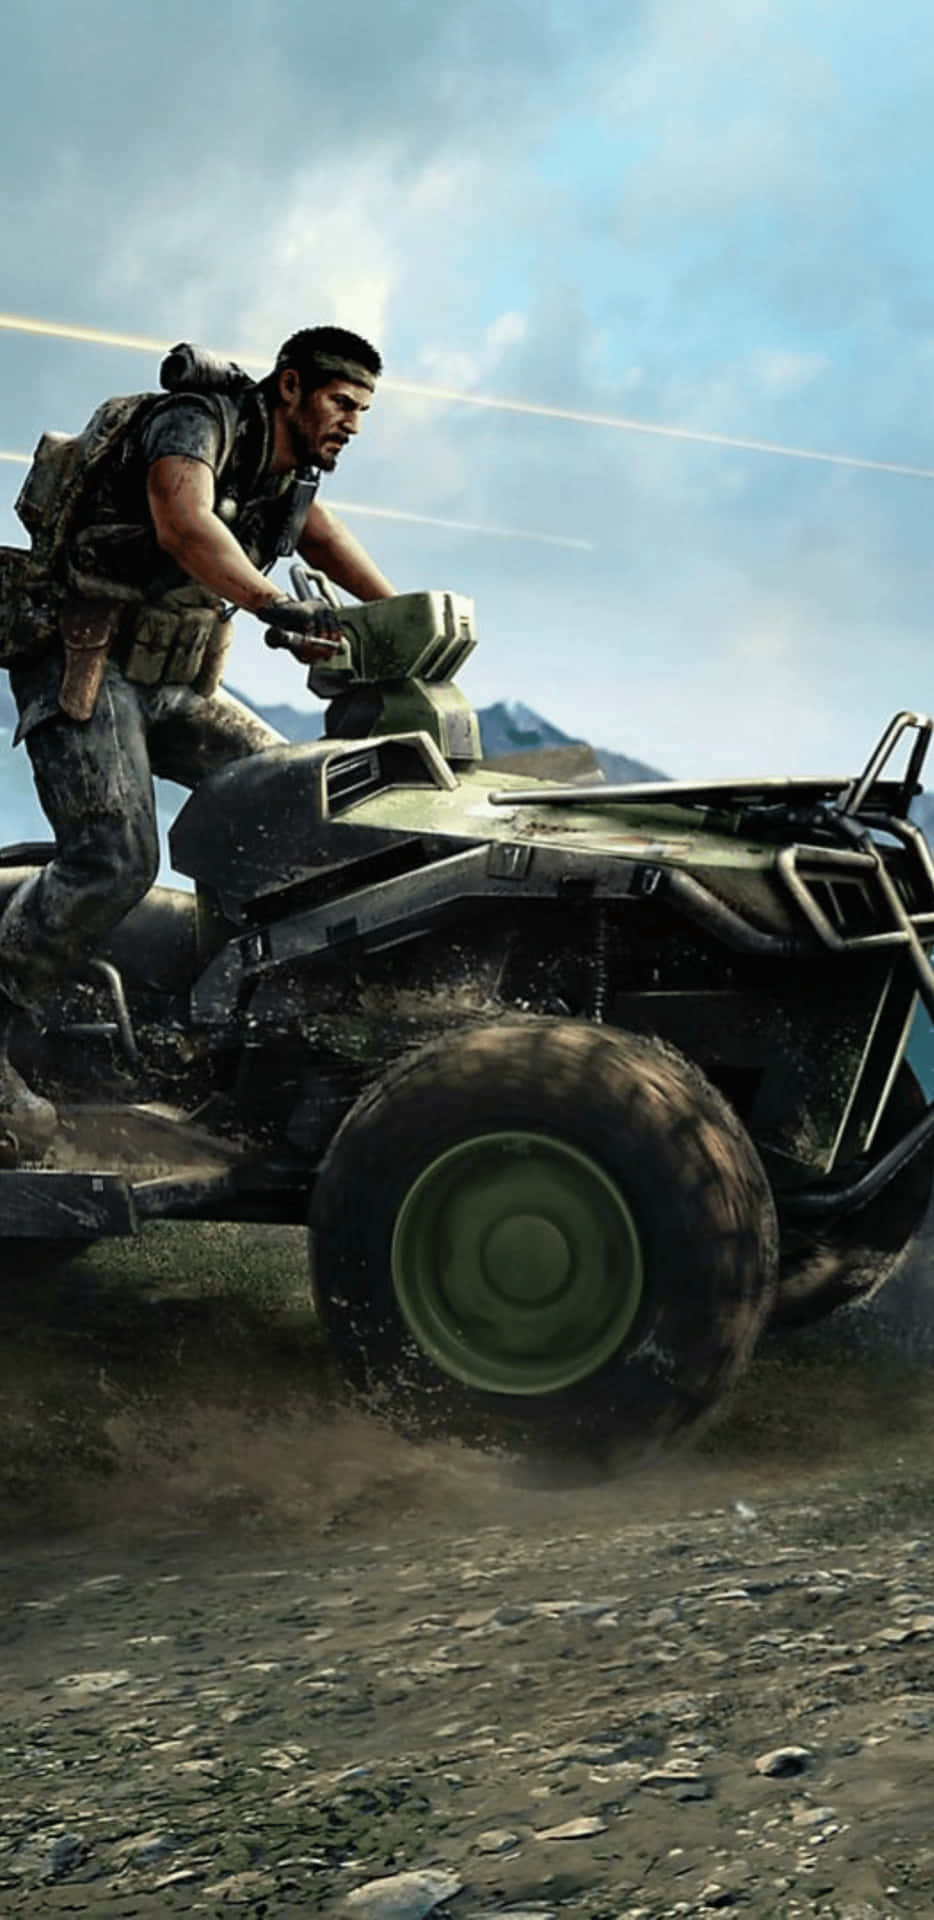 Fördjupadig I Den Spännande Handlingen I Call Of Duty Black Ops 4 Med Pixel 3xl Som Bakgrundsbild.